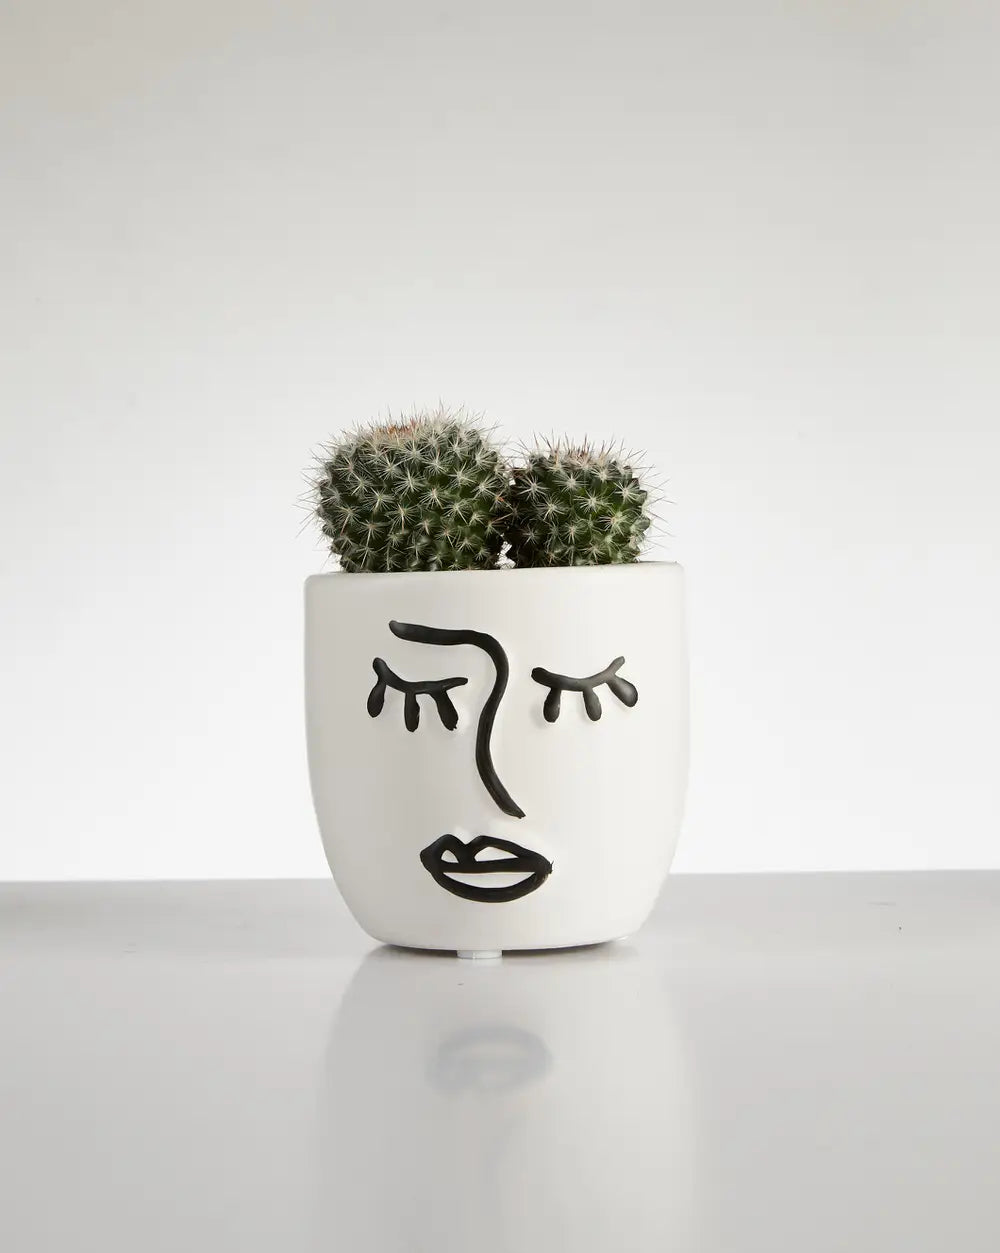 Cactus “Mammillaria” Cluster in Face Pot (60mm)